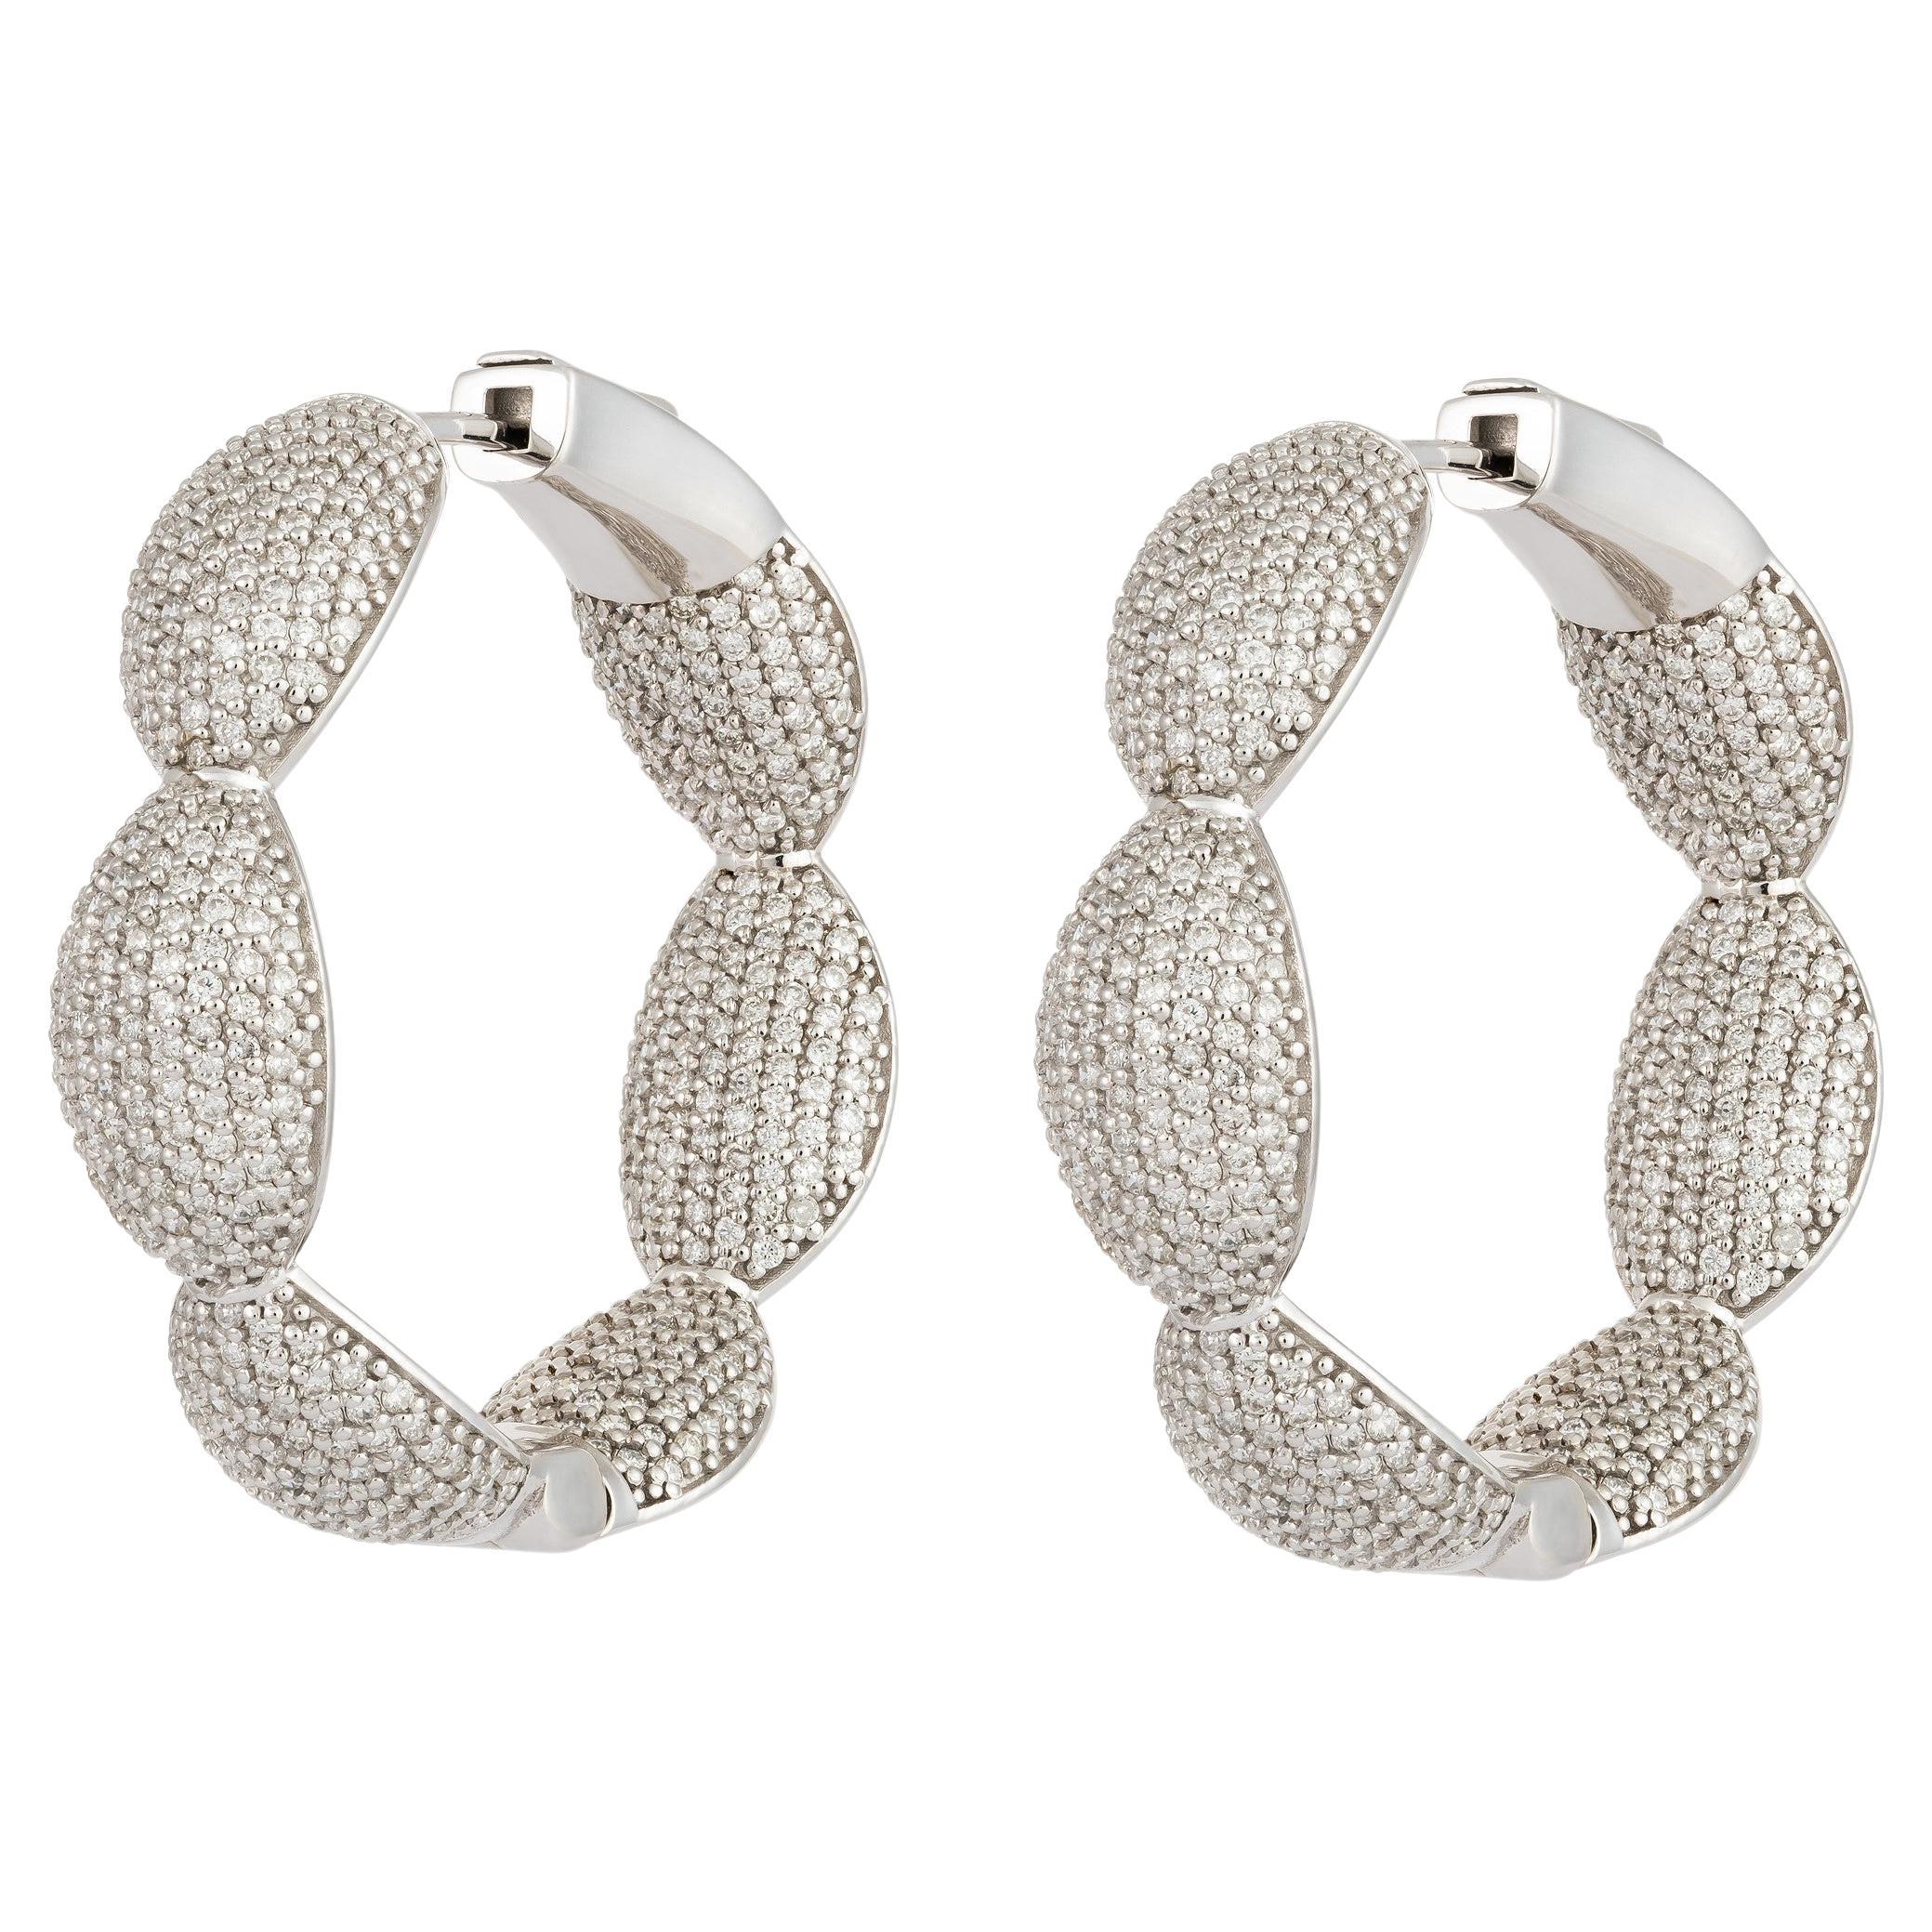 NWT $25, 000 18KT White Gold Fancy Large Glittering Fancy Diamond Hoop Earrings